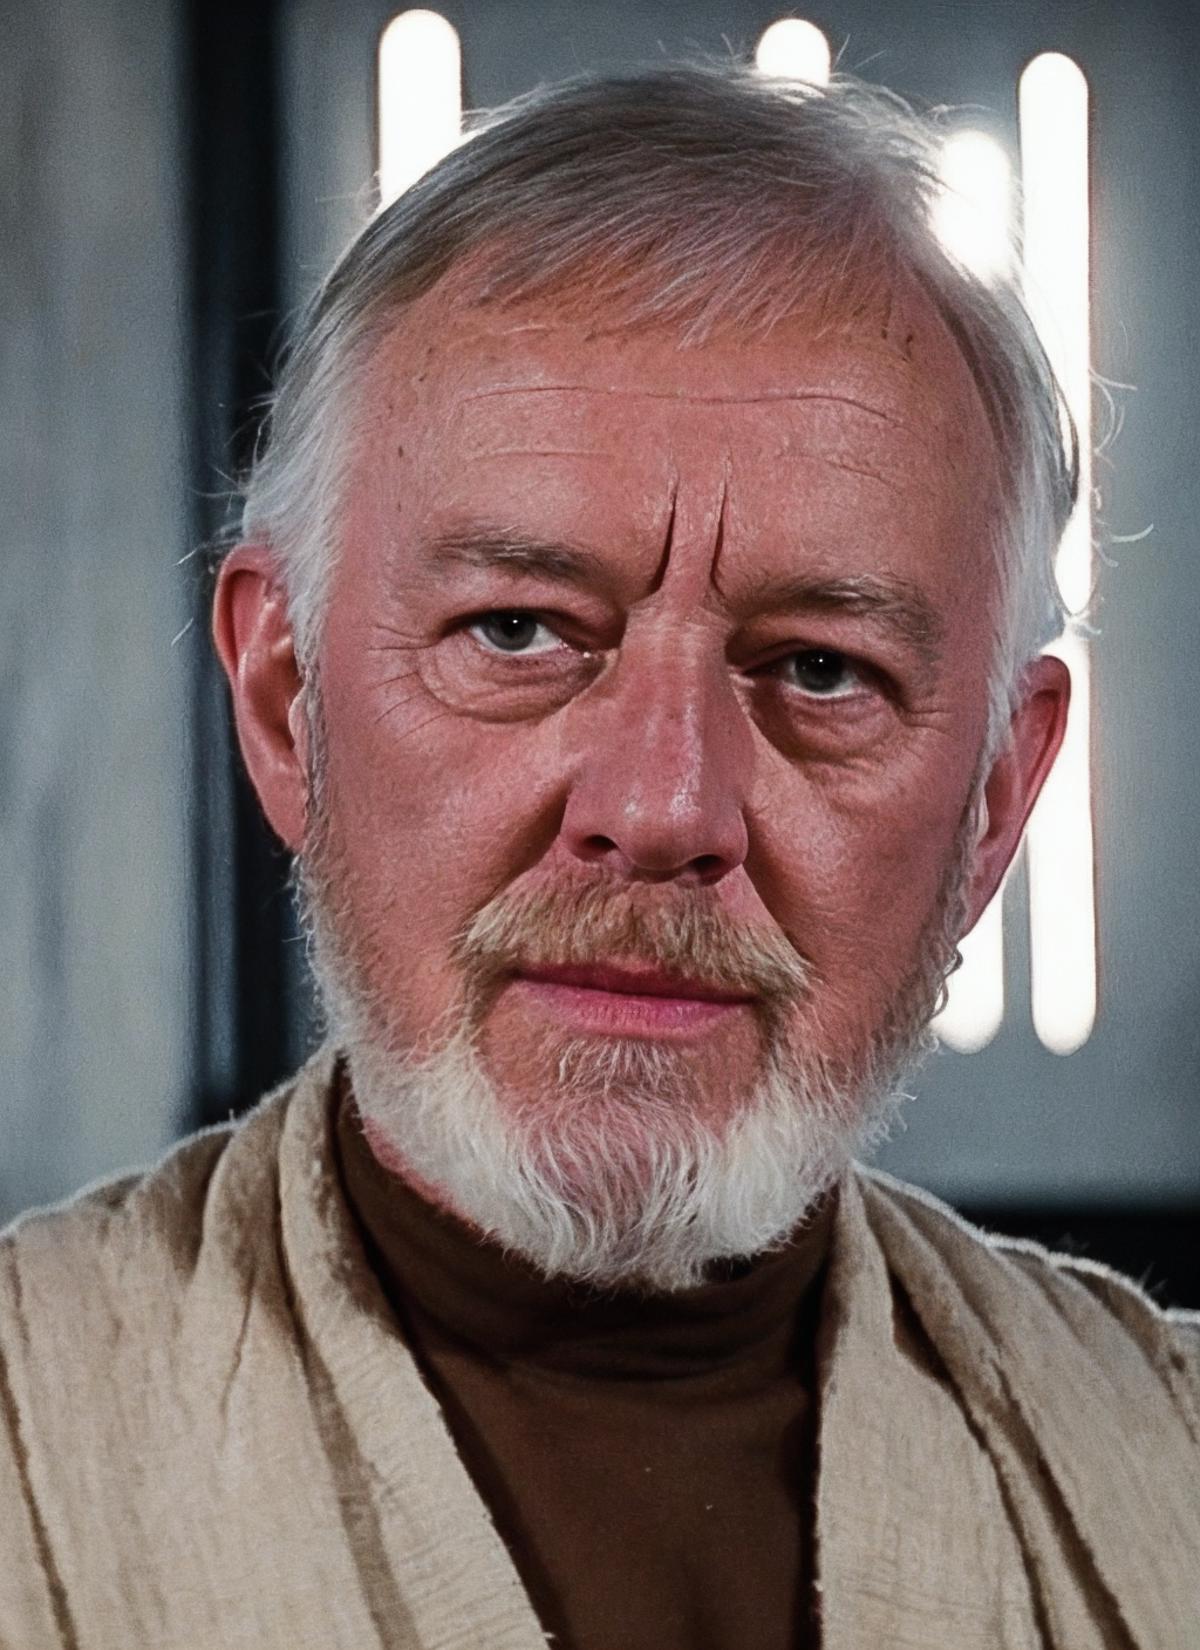 Obi Wan Kenobi (in loving memory of Sir Alec Guinness) image by wensleyp01